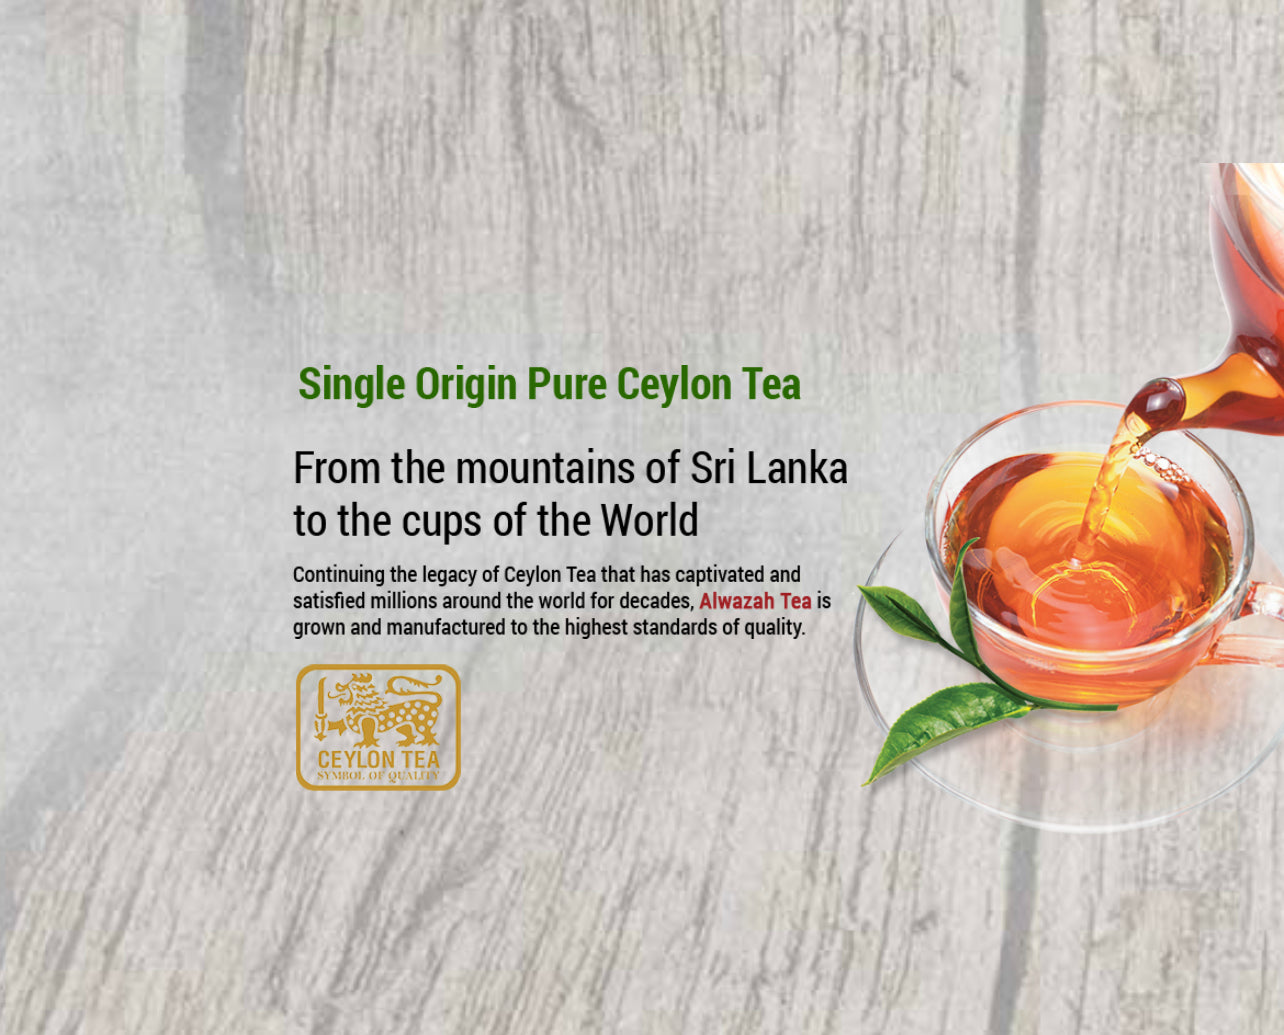 Alwazah Tea (Swan Brand) with Cardamom Quality 100 bags x 2 grms